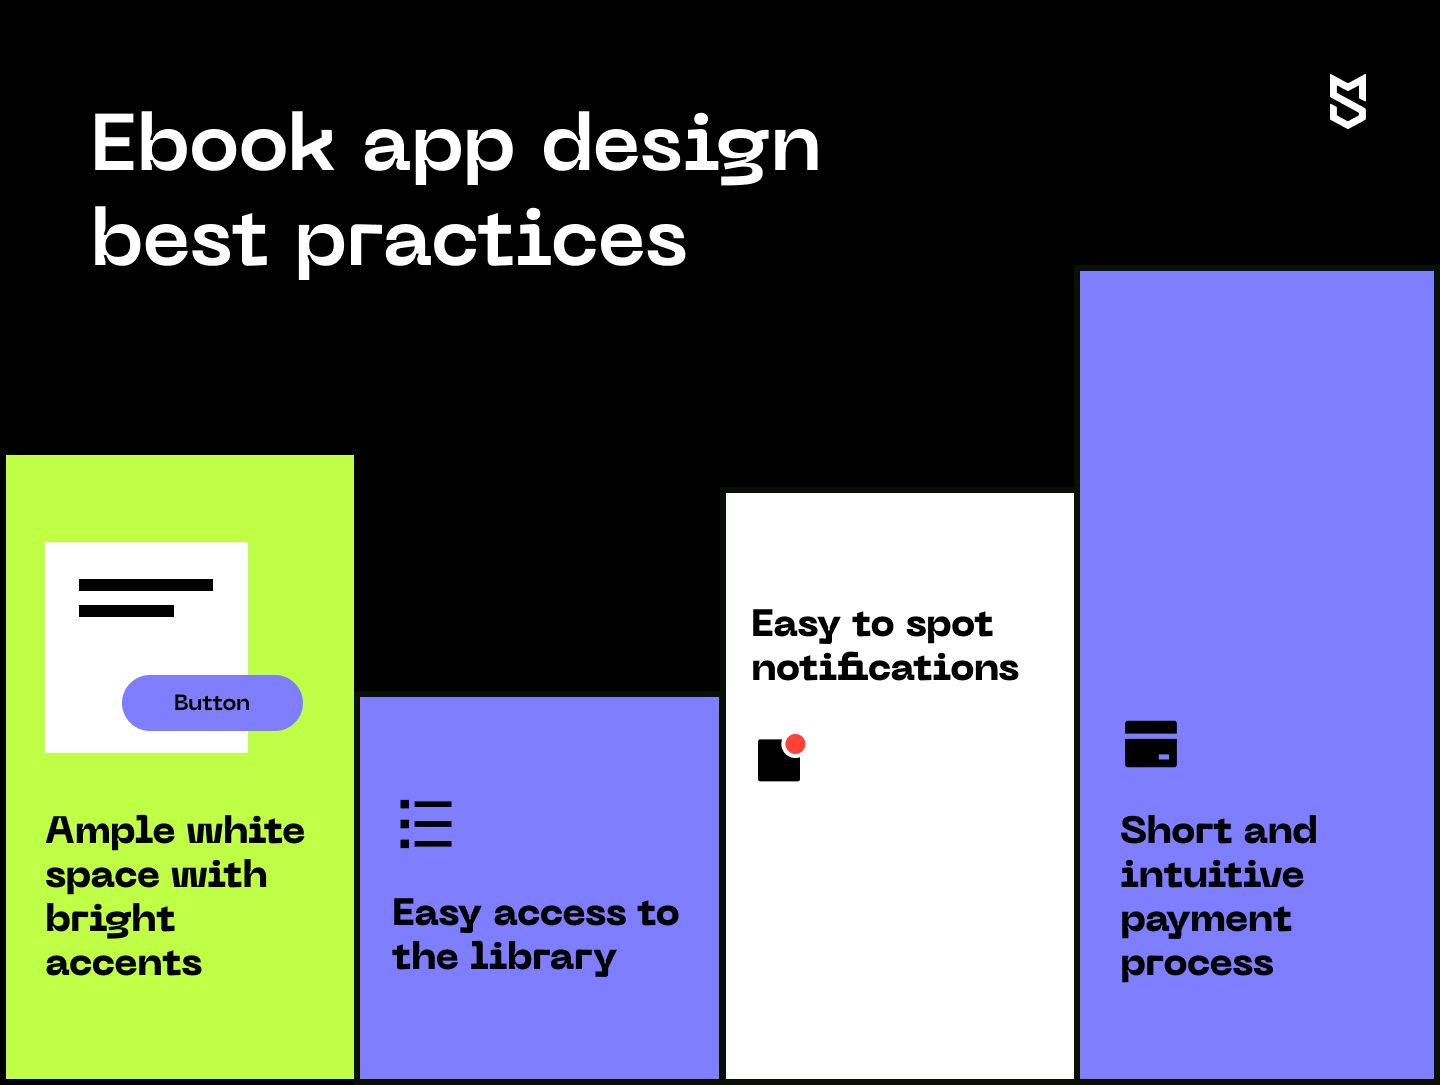 Ebook app design best practices